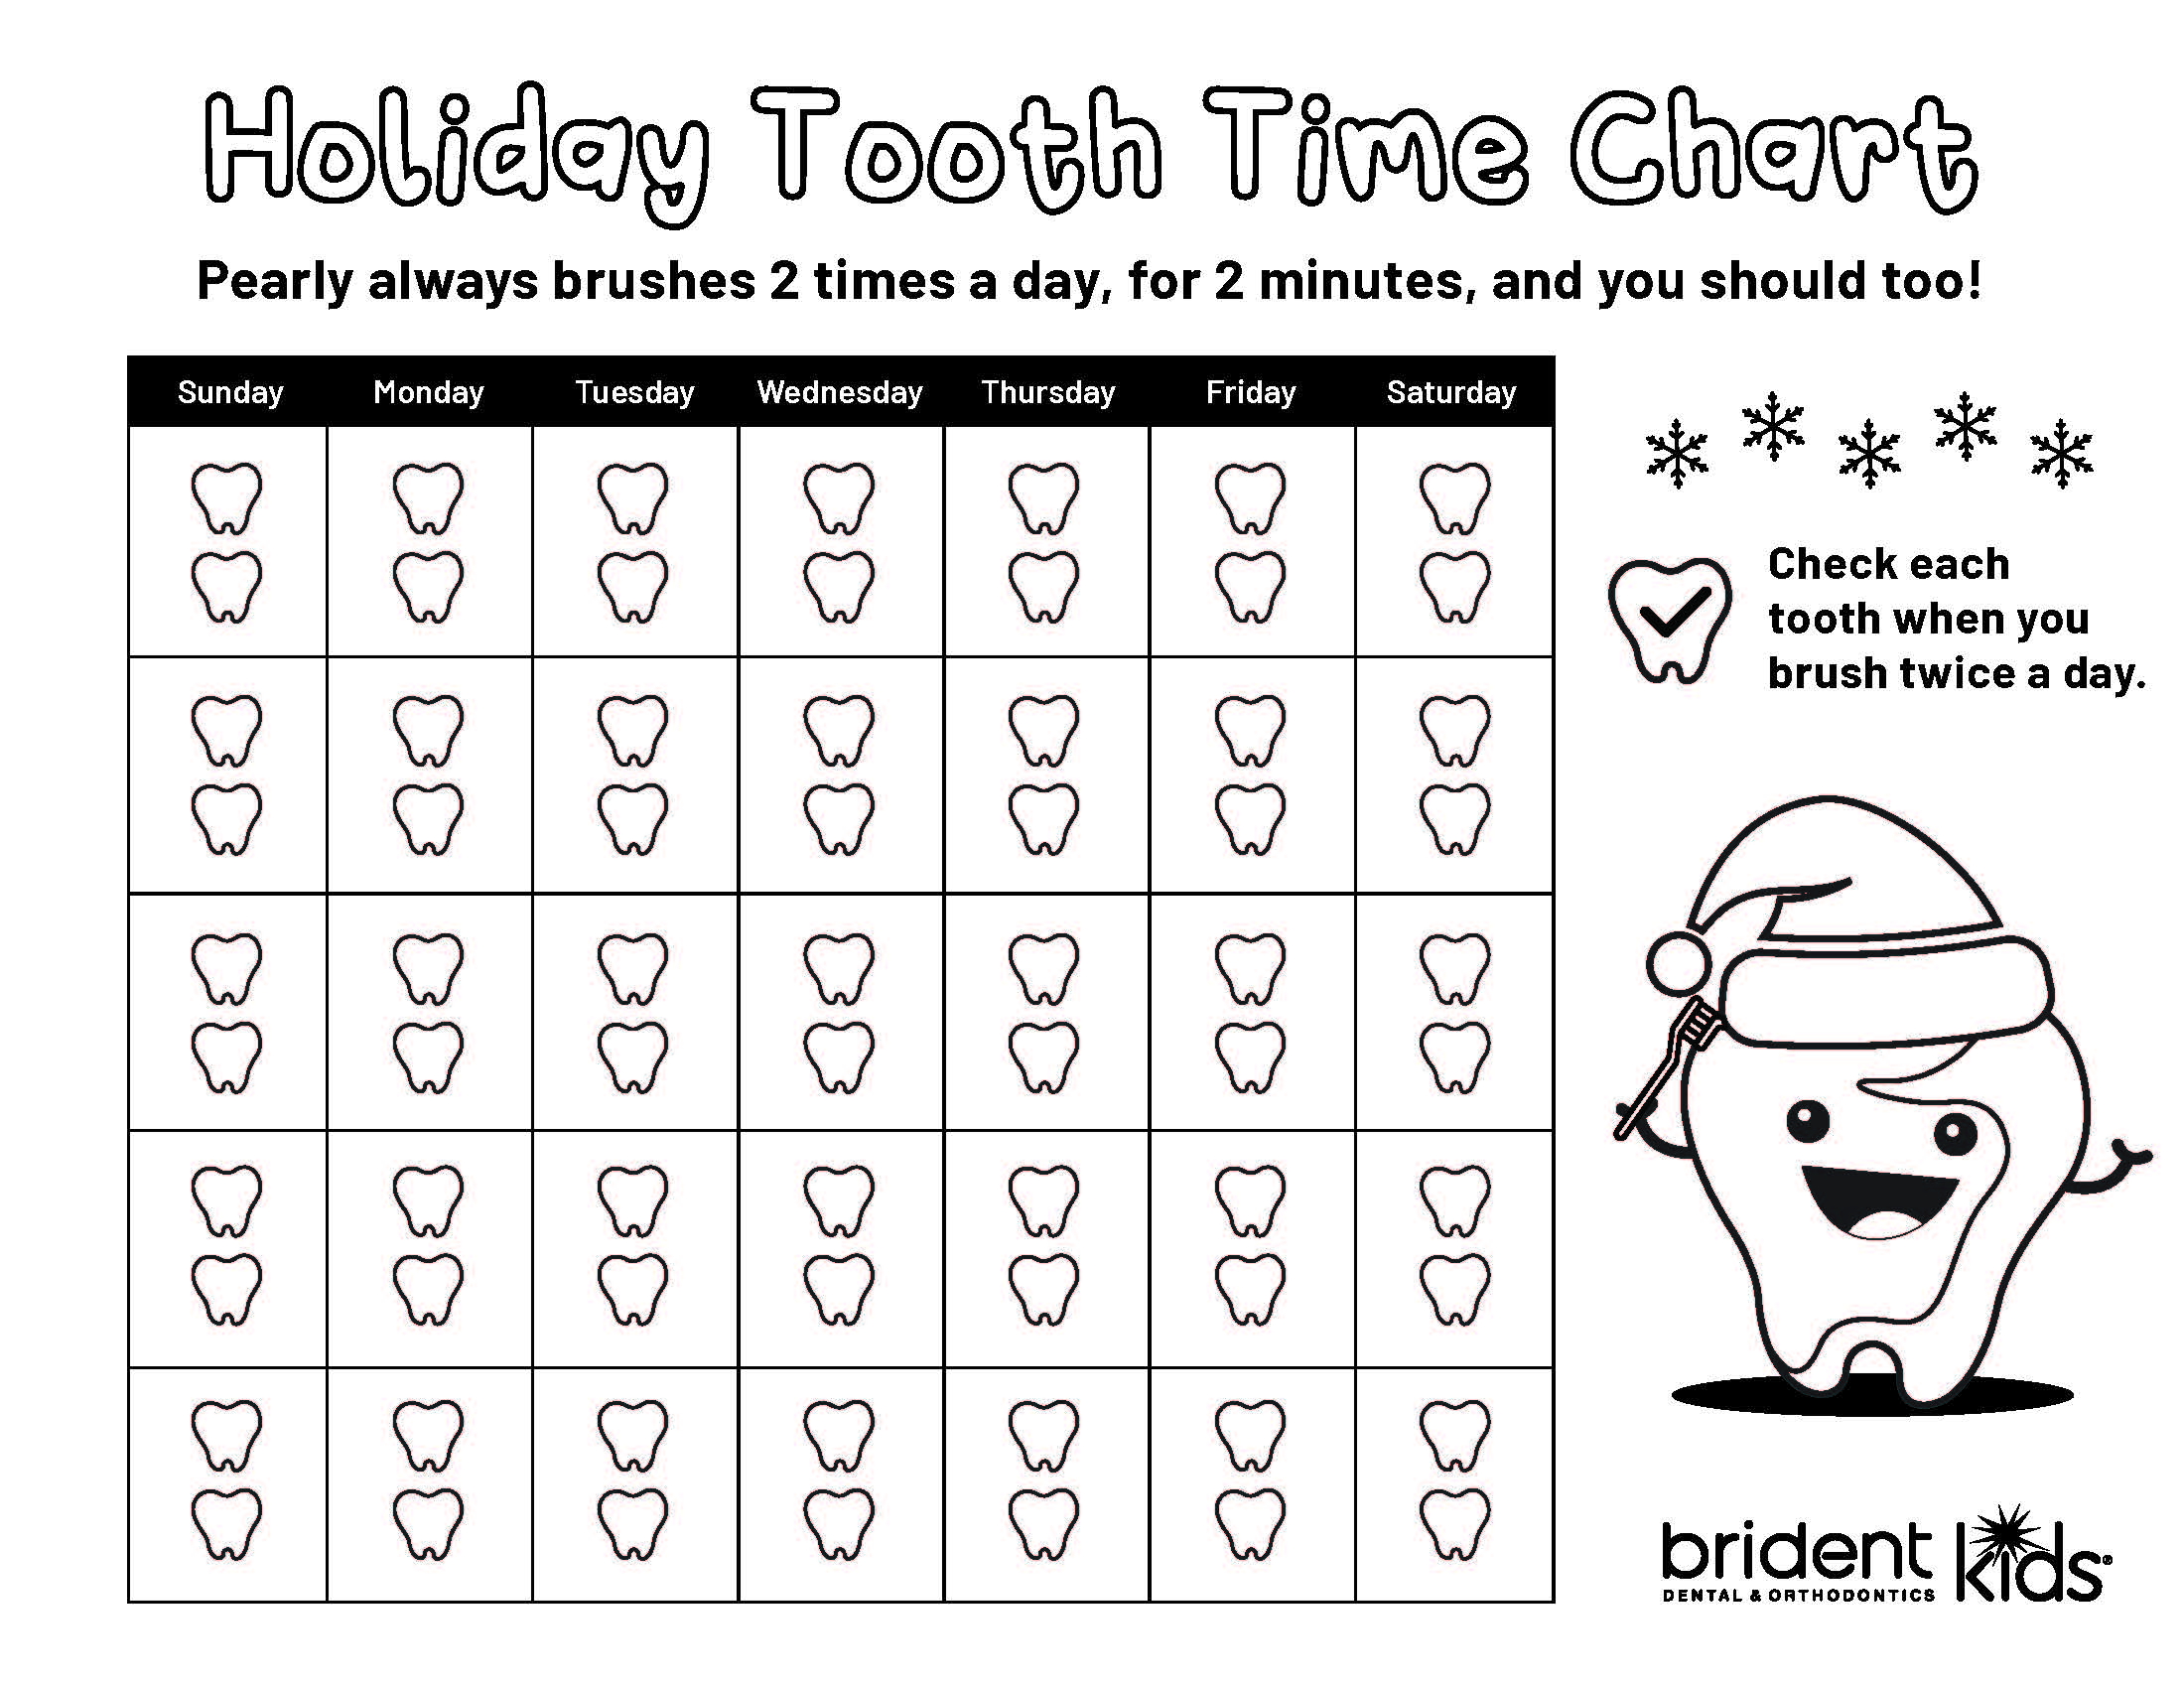 Brident Dental Kid's Activity Sheet